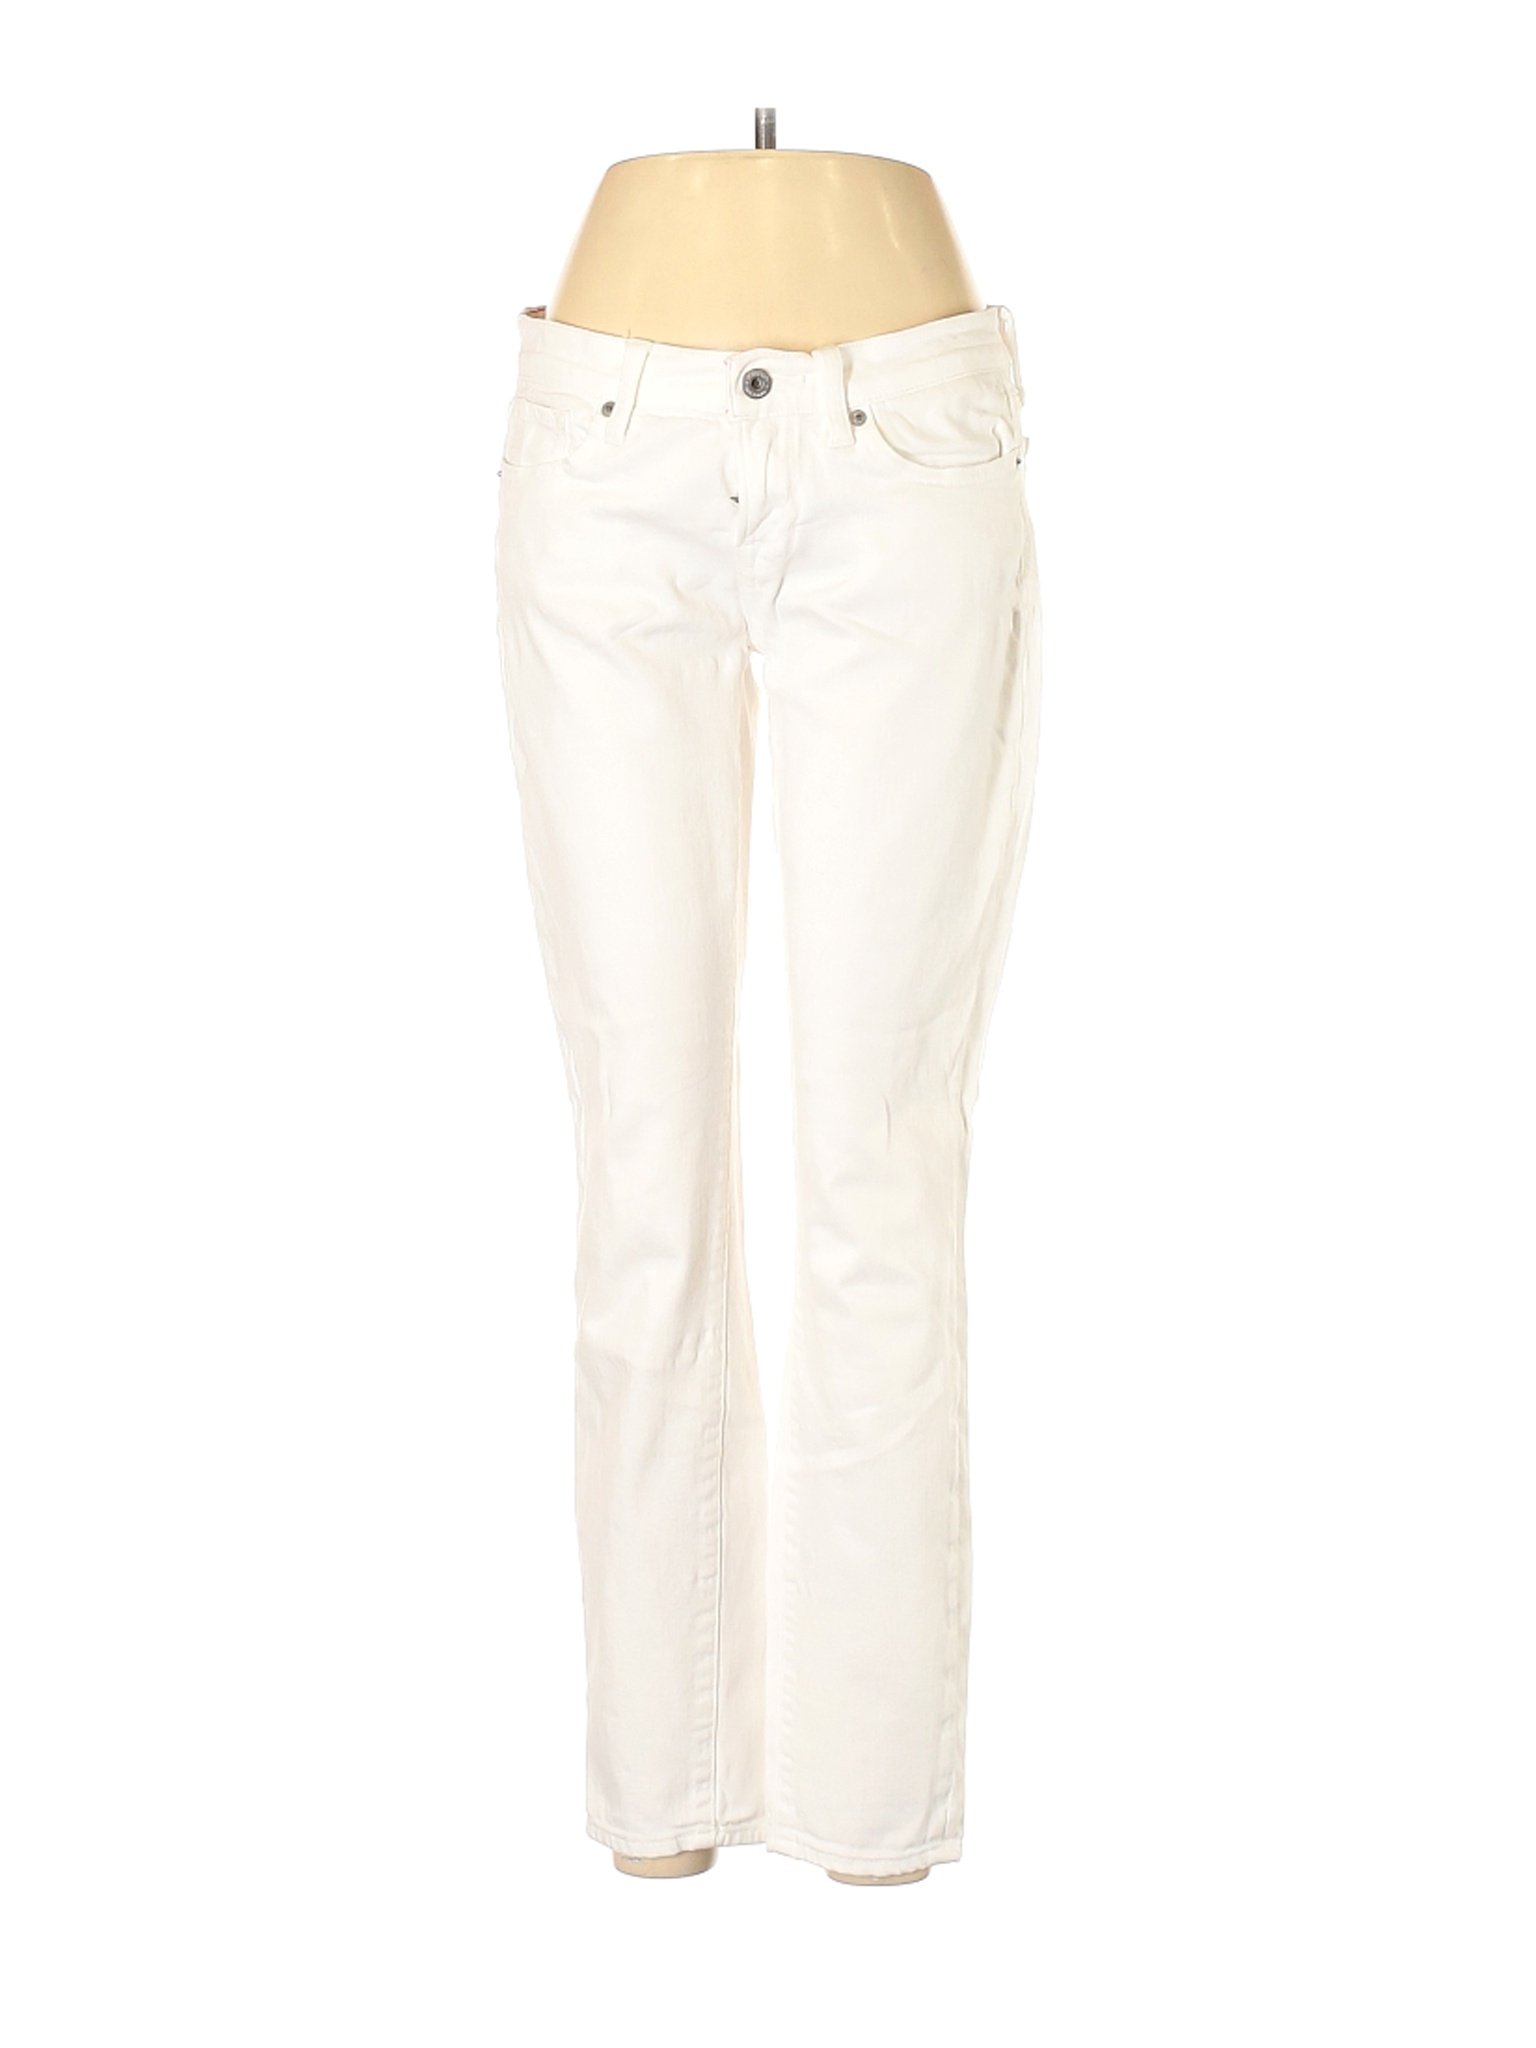 Lucky Brand Women White Jeans 8 | eBay